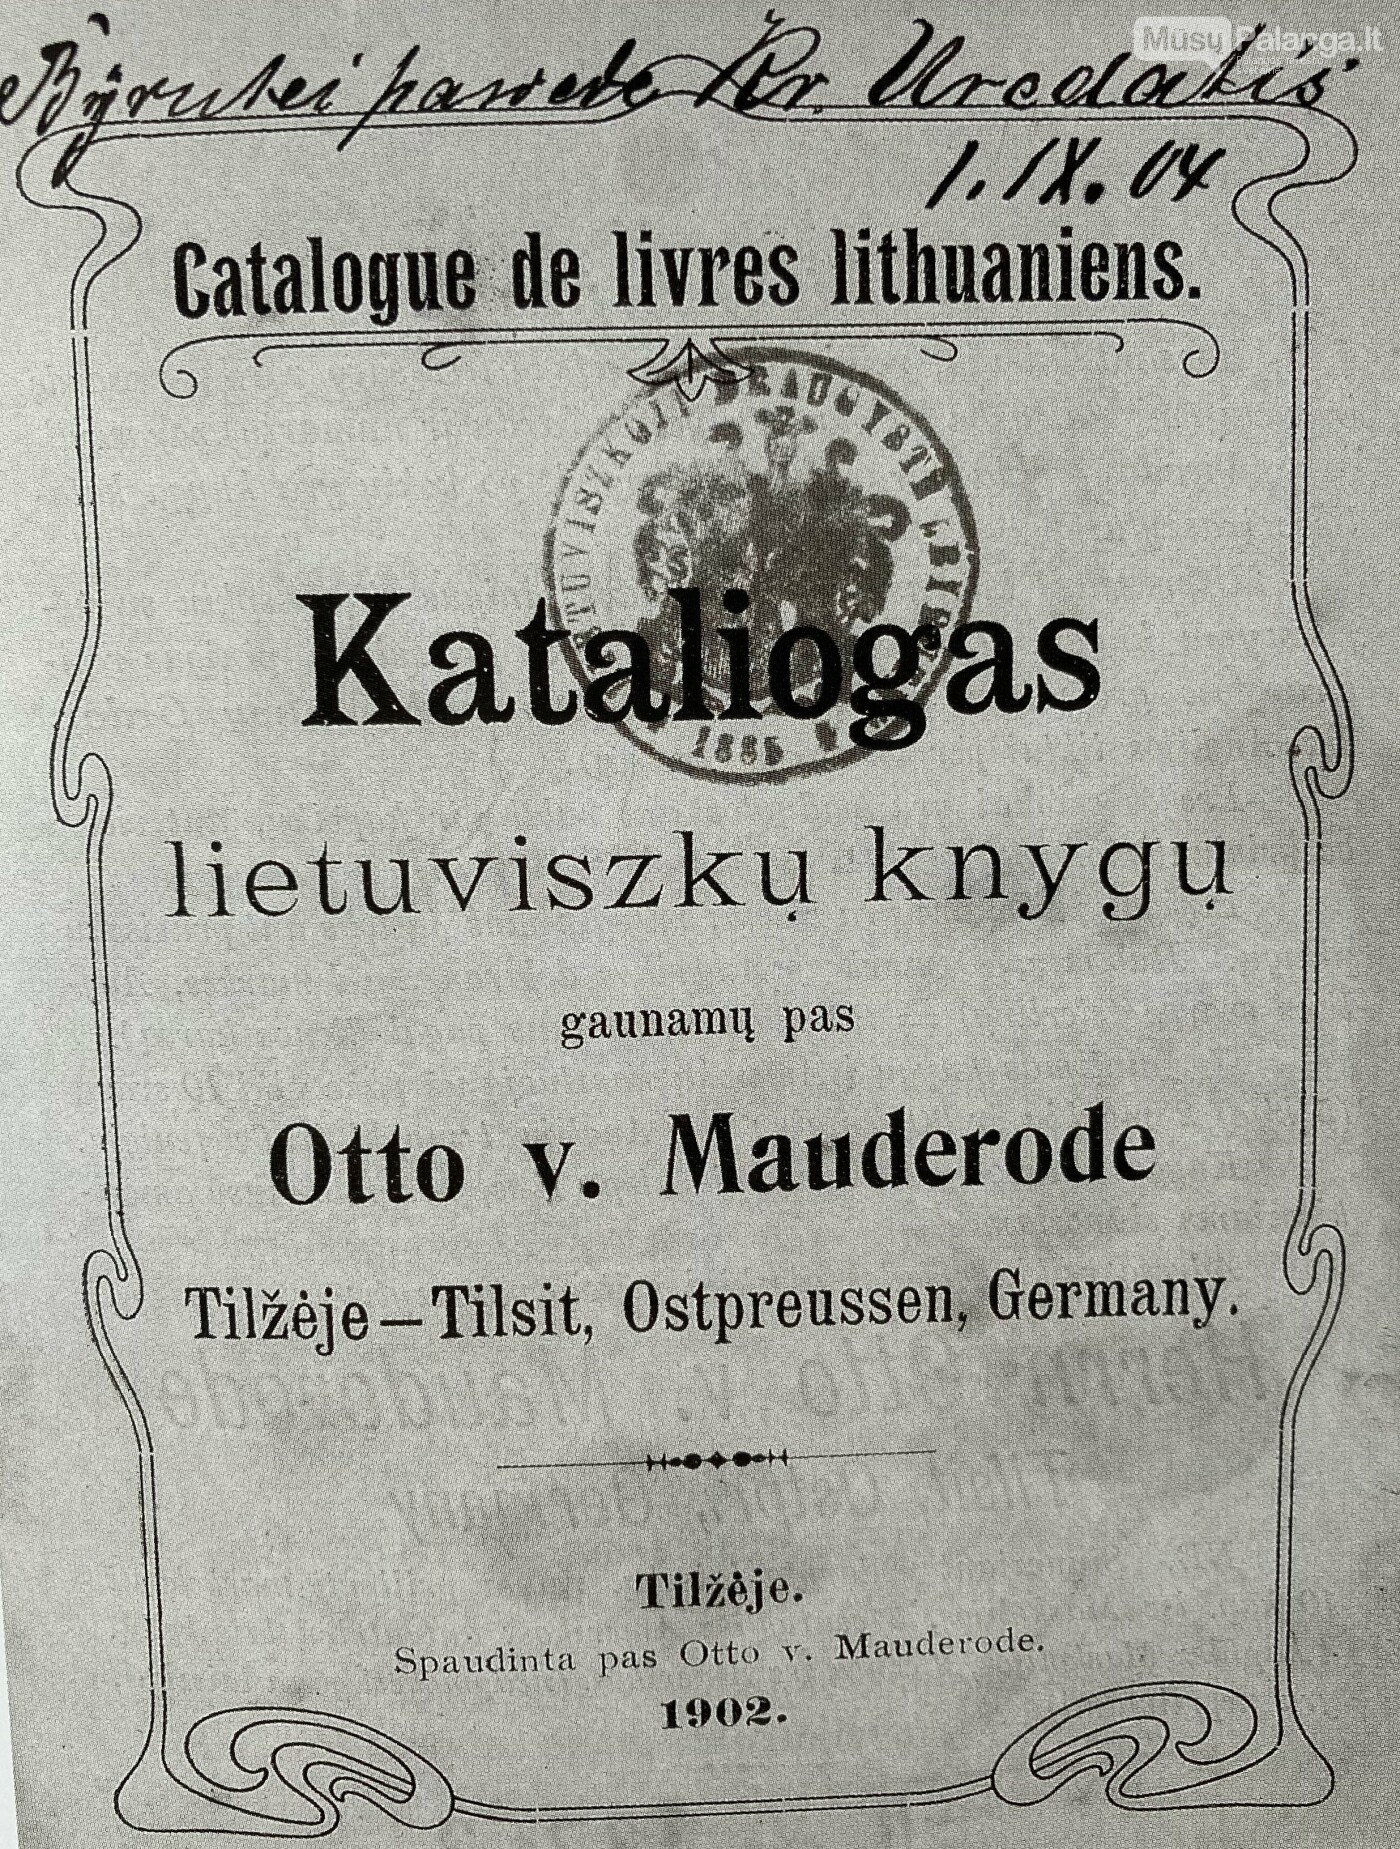 O.von Mauderodės spaustuvėje Tilžėje spaudos draudimo metais buvo išspausdinta apie 800 lietuviškų knygų, iš jų apie 220 kontrafakcijų. Šios spaust...